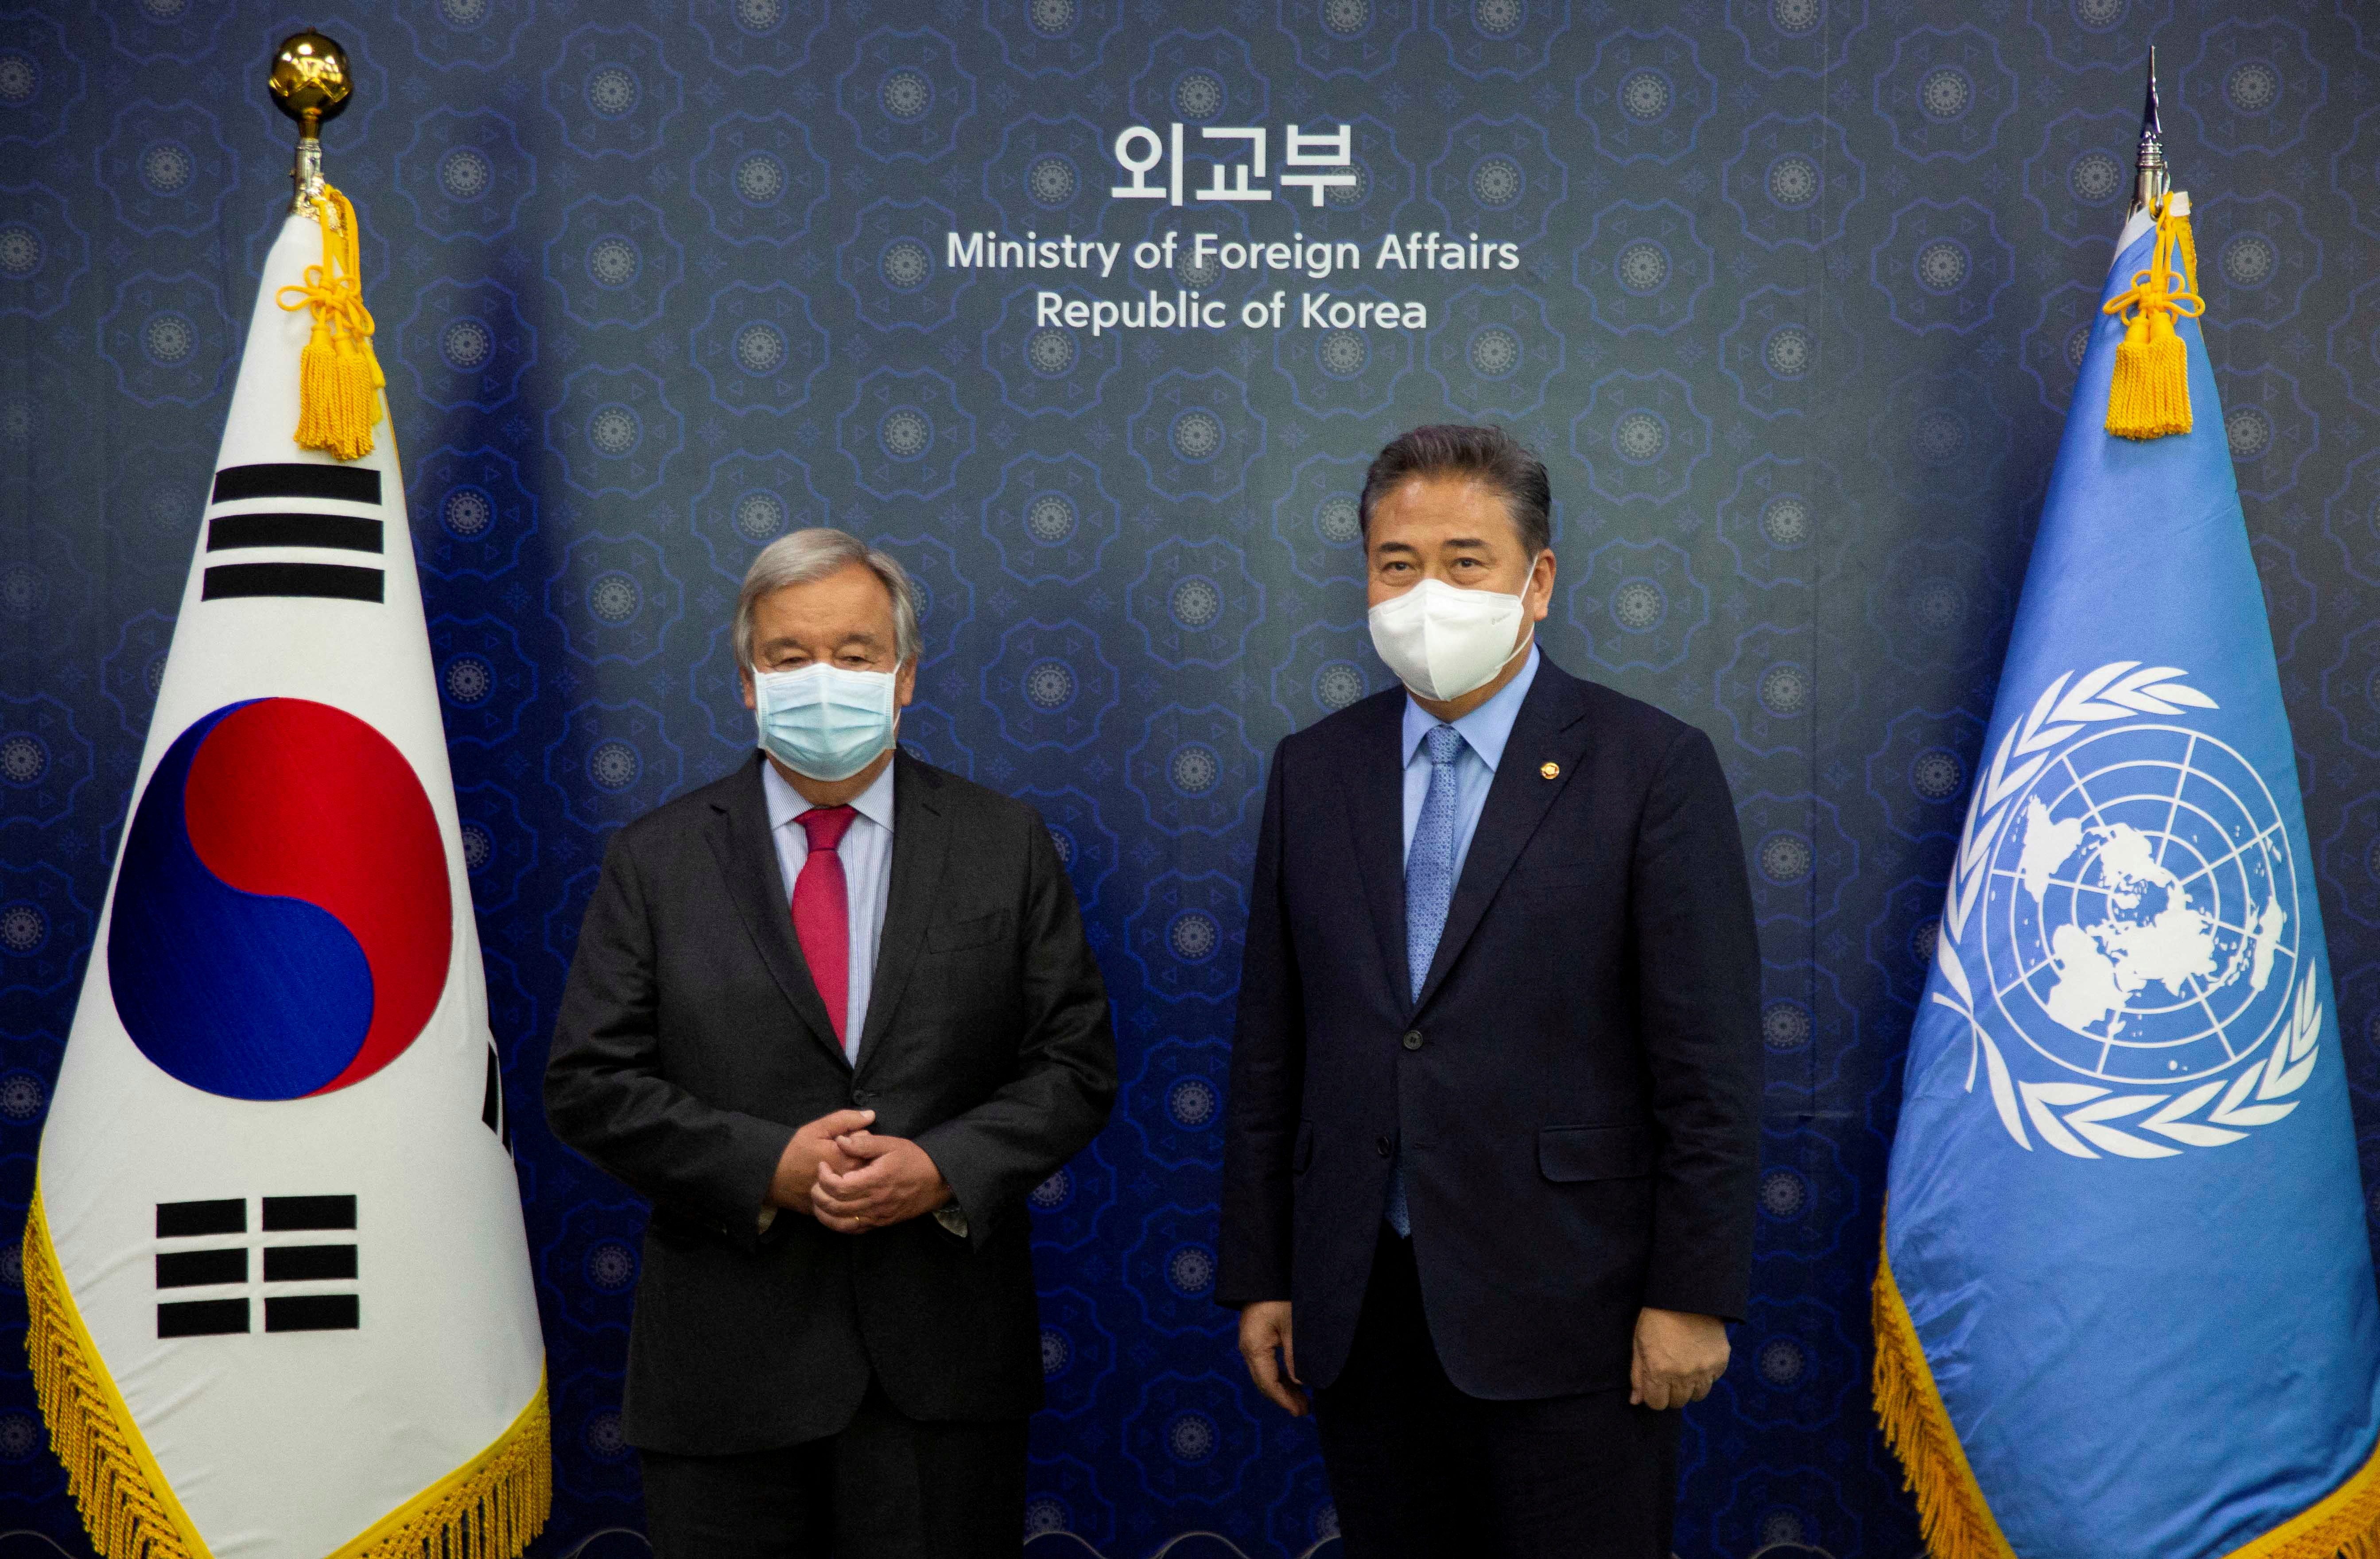 UN Secretary-General Antonio Guterres visits in Korea